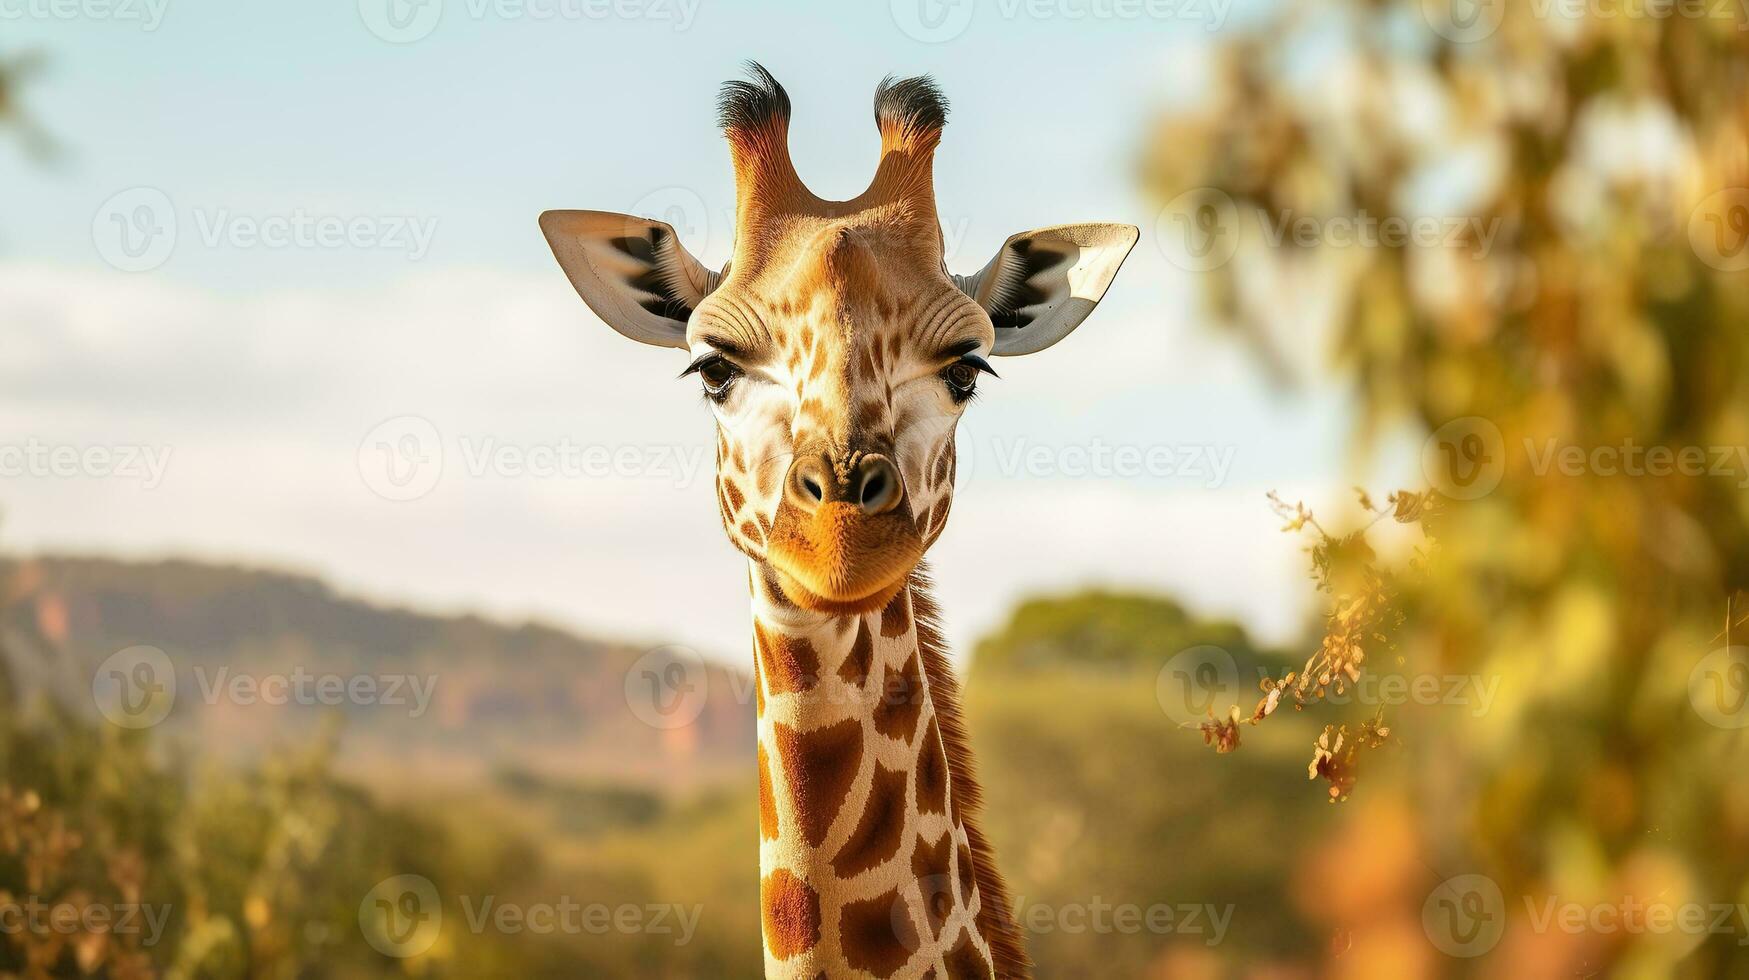 a photo Giraffe